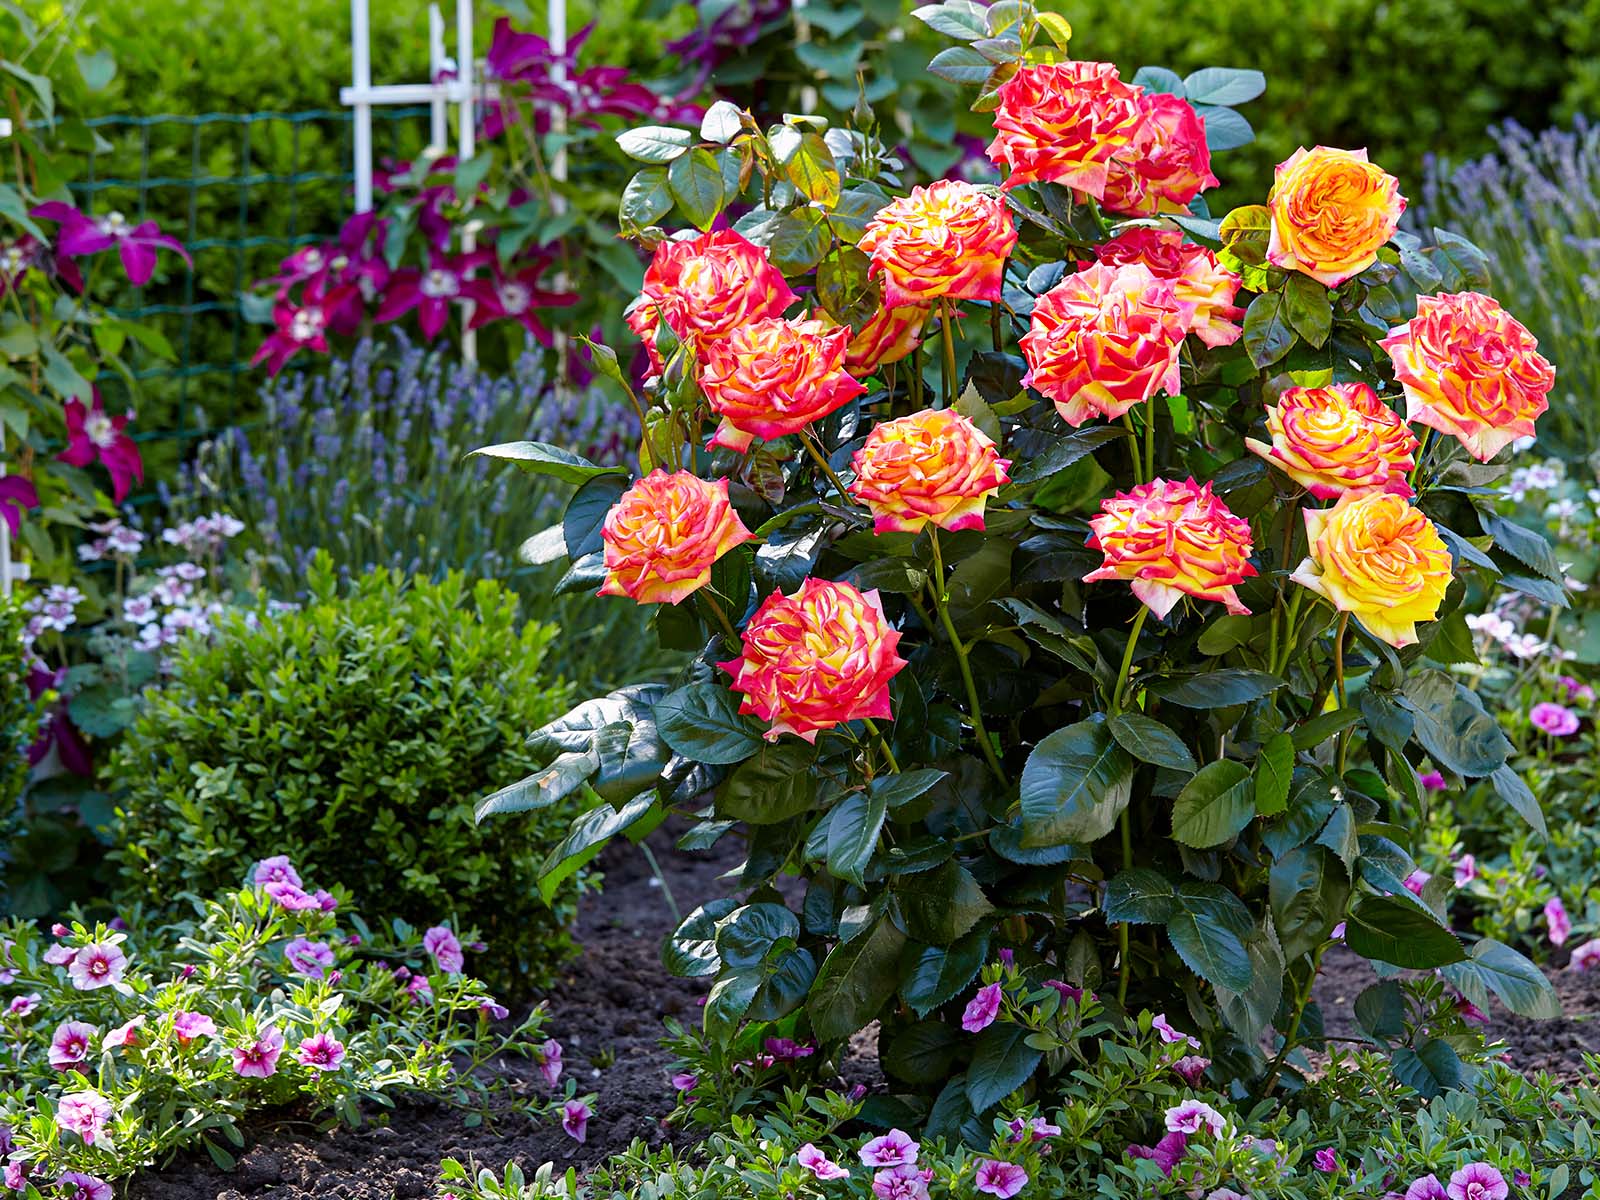 Rose Twister Select garden on Thursd